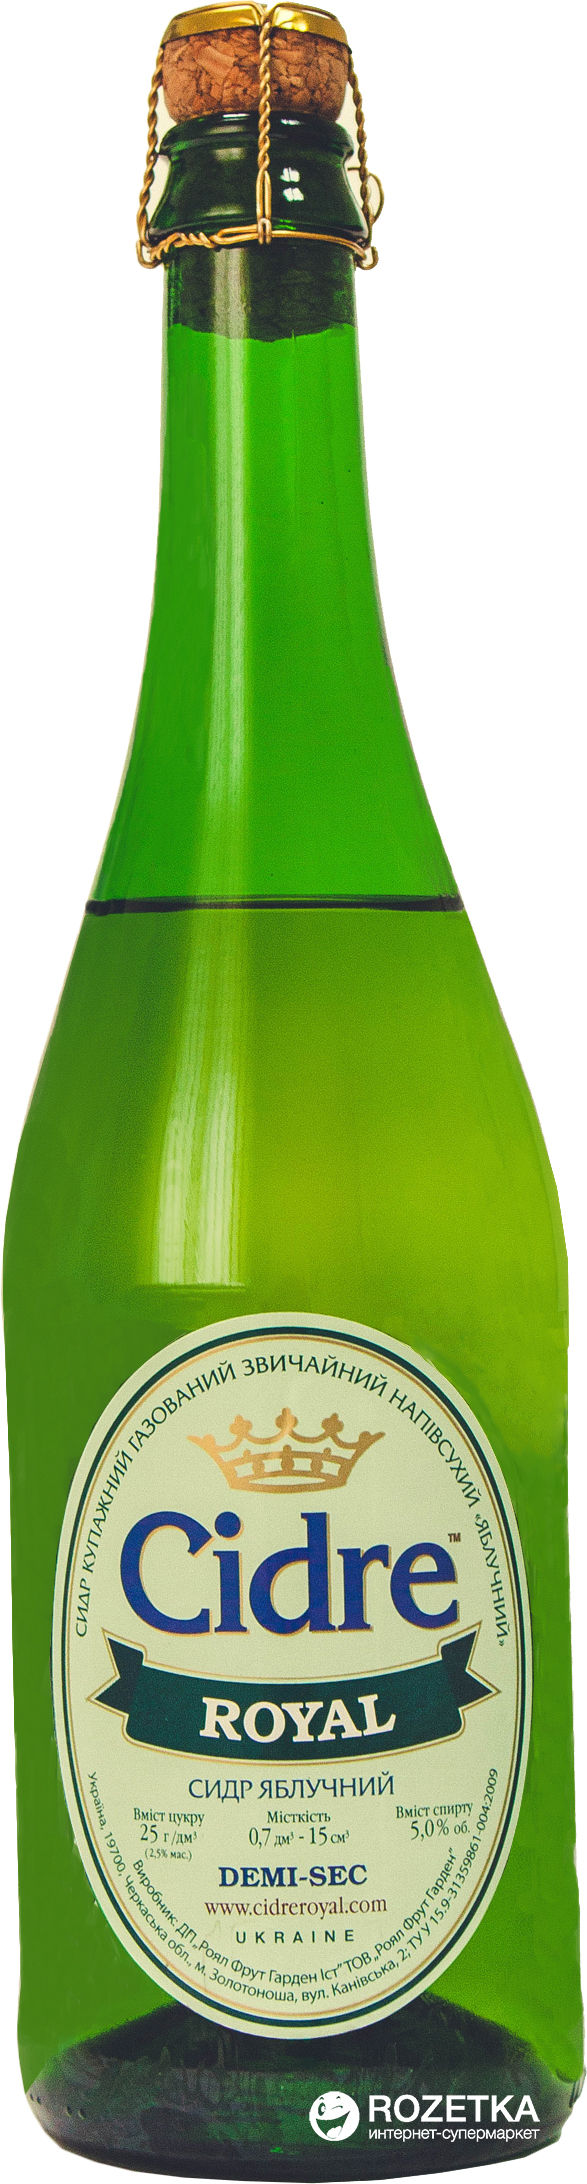 Акция на Упаковка сидра Роял полусухой Яблочный 5-6.9% 0.7 л x 6 бутылок (4820120800344) от Rozetka UA